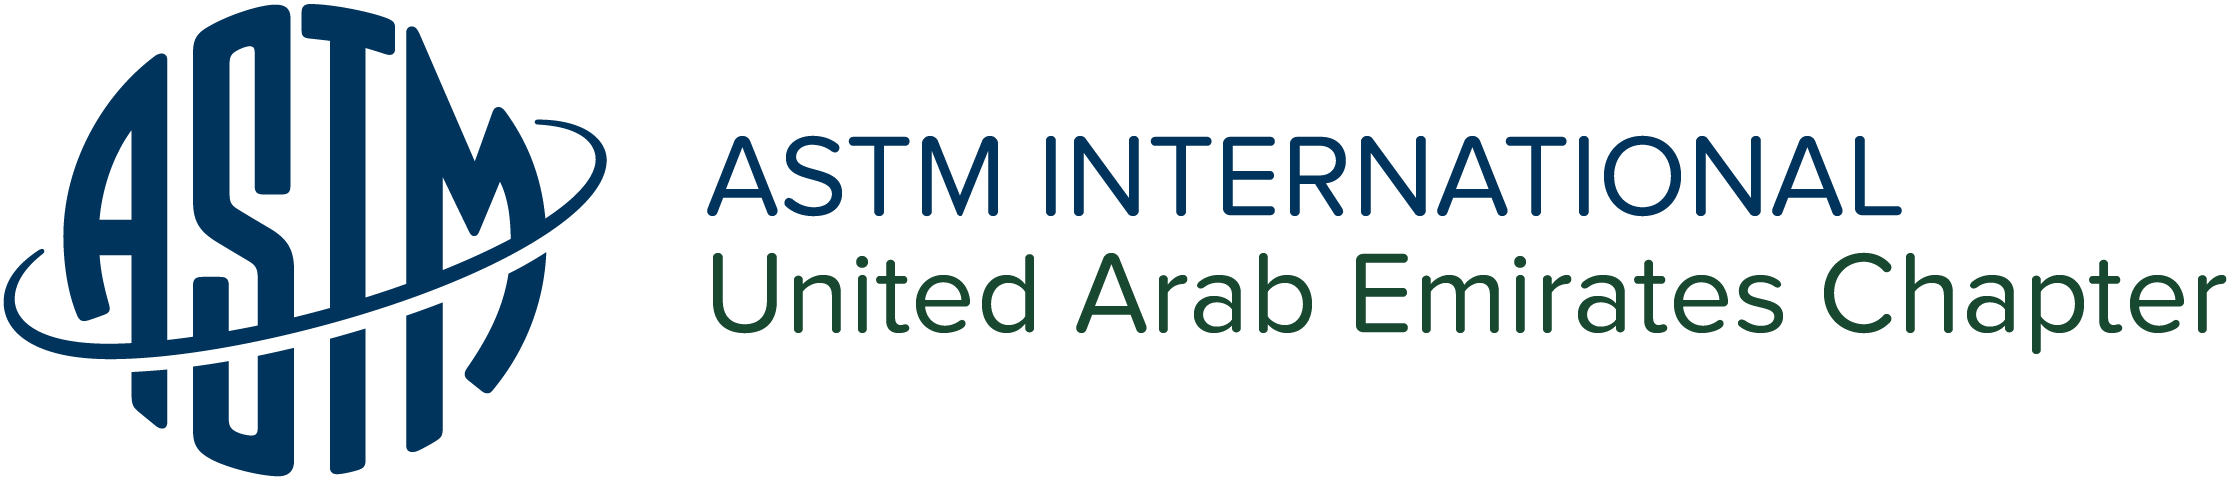 ASTM International - United Arab Emirates Chapter